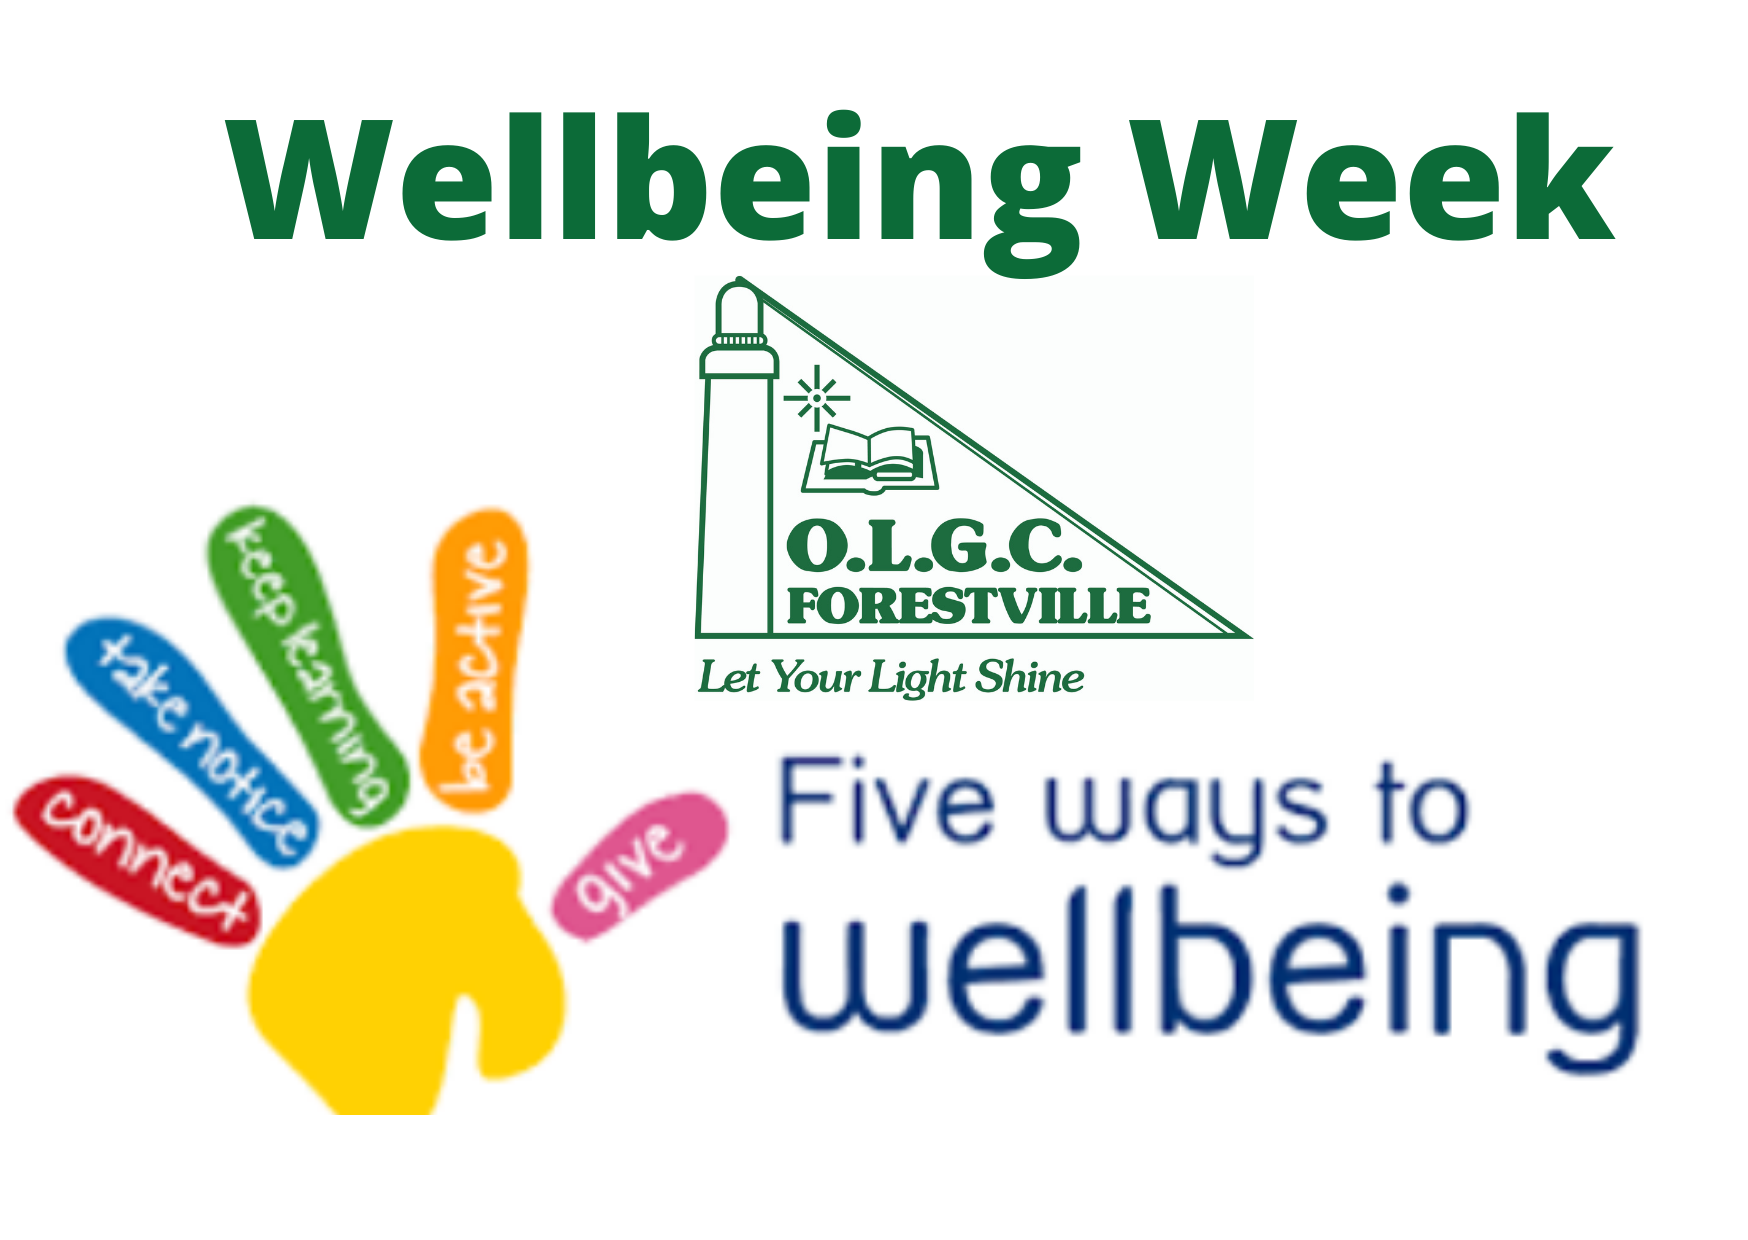 OLGC Wellbeing Week